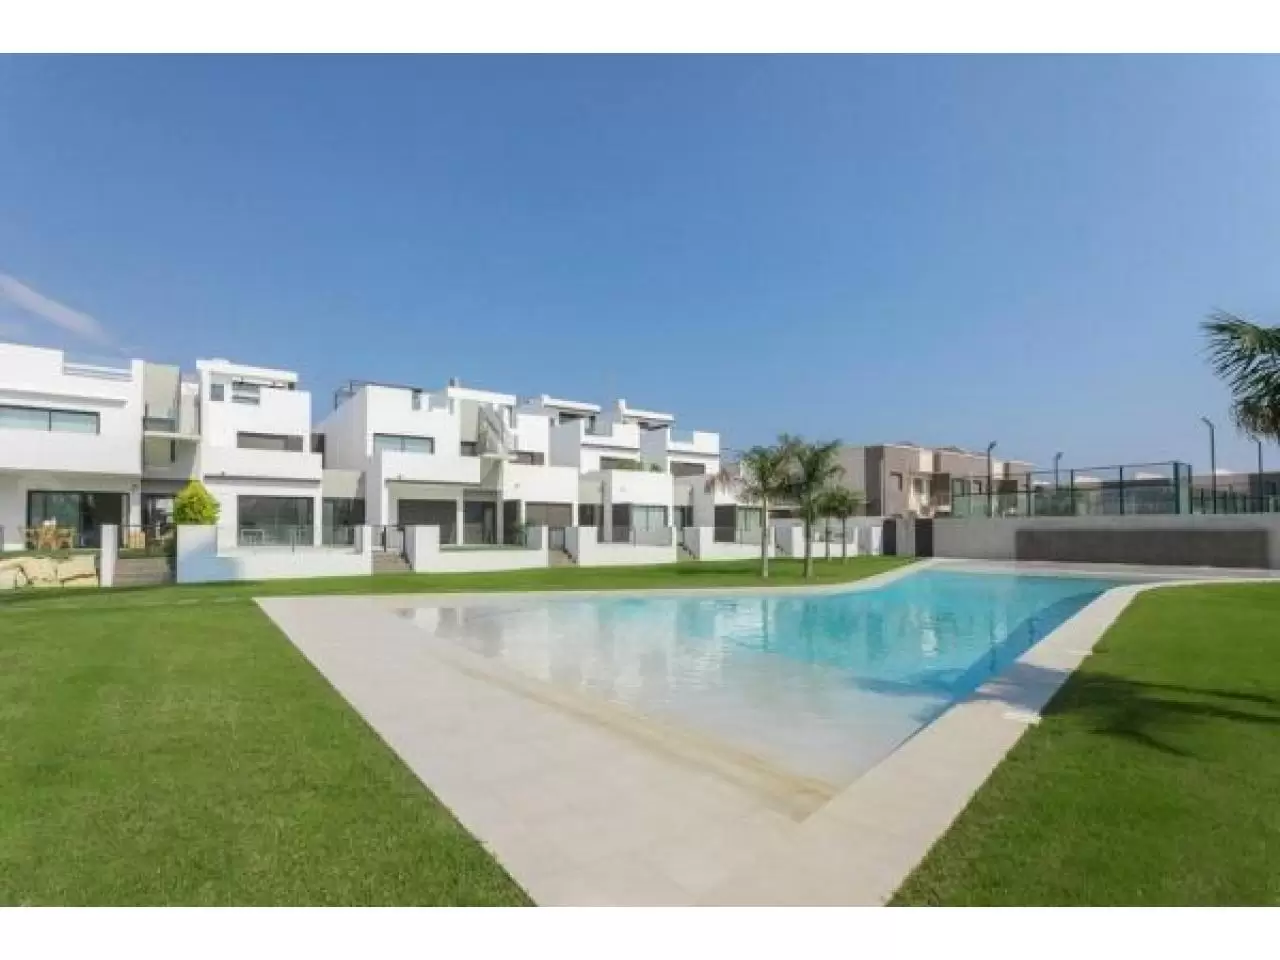 Недвижимость в Испании, Новые бунгало рядом с пляжем от застройщика в Торре де ла Орадада - 1